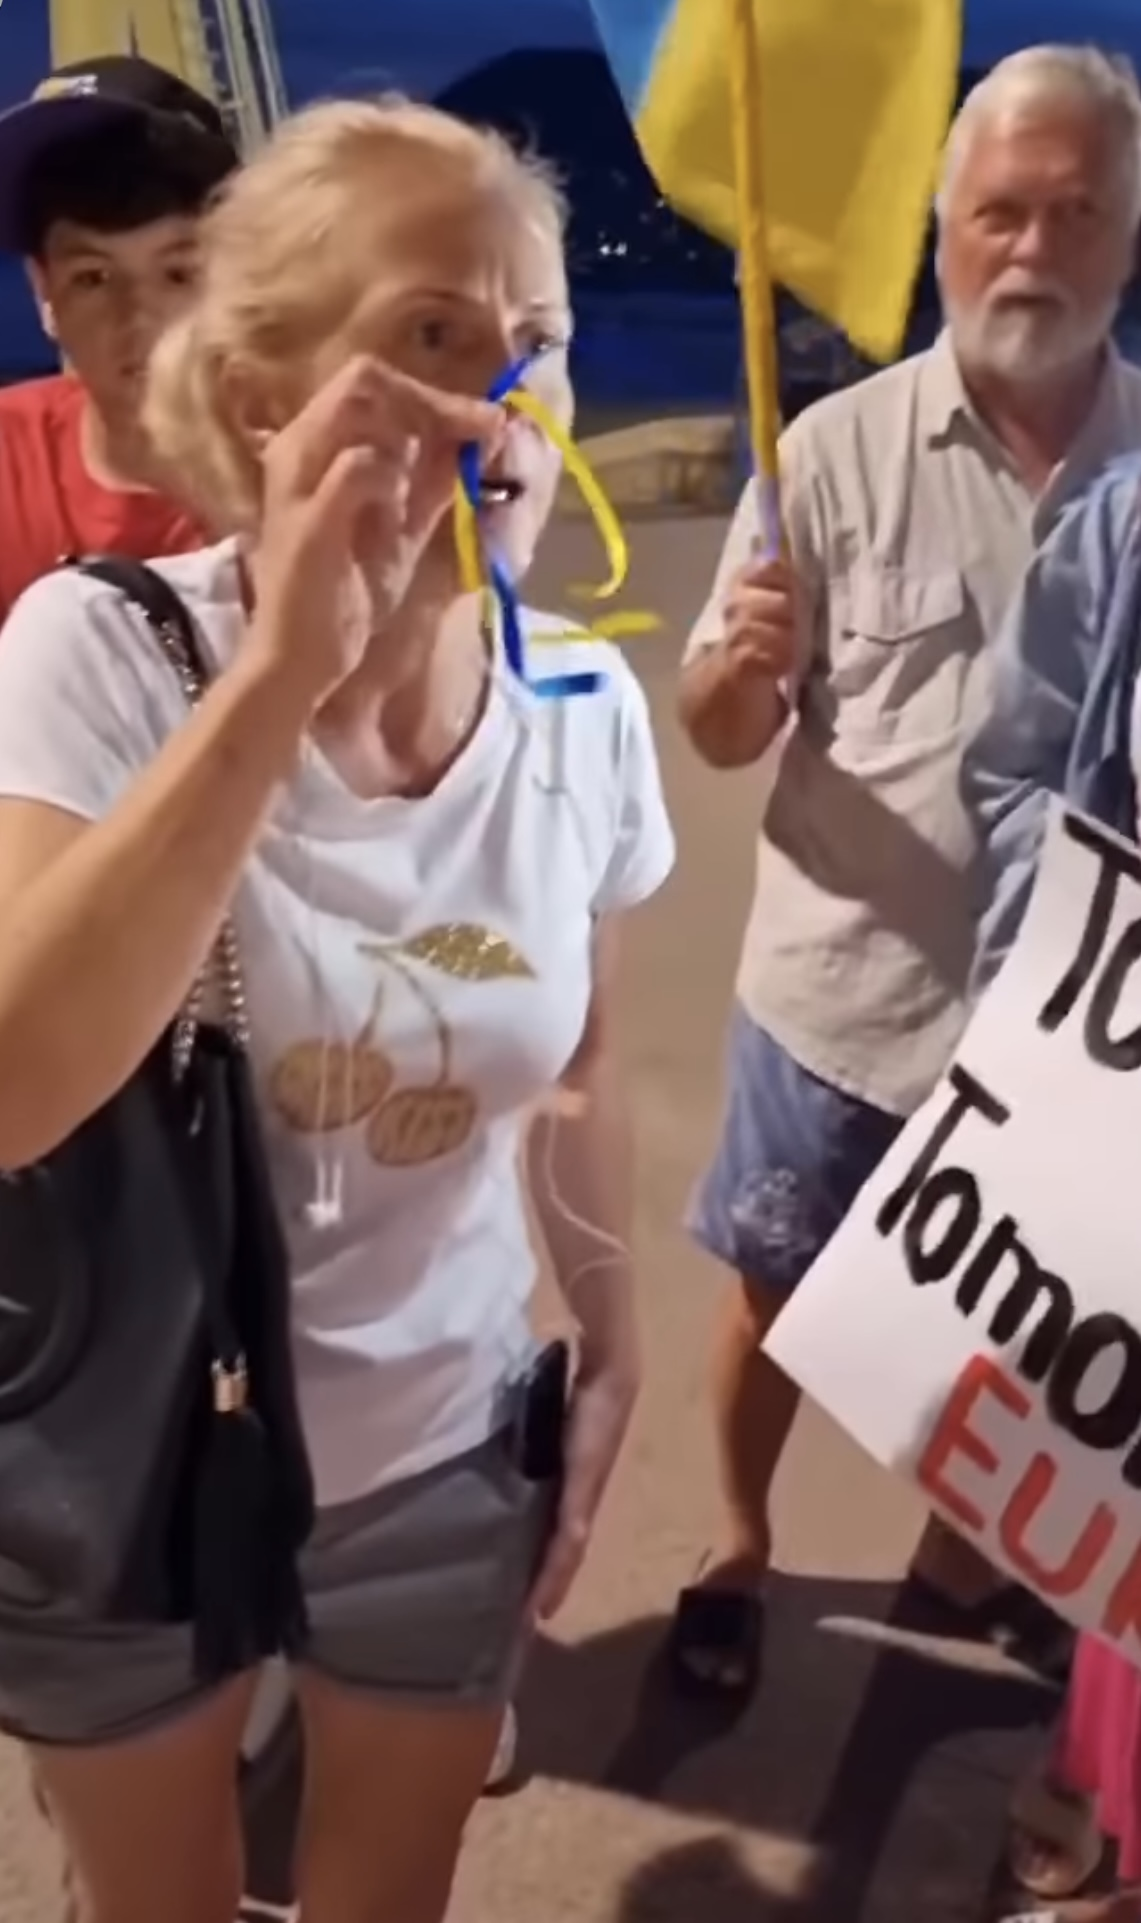 "Мало вам!" Рамина показала, как неадекватная россиянка в Испании пыталась сорвать антивоенный митинг украинцев. Видео